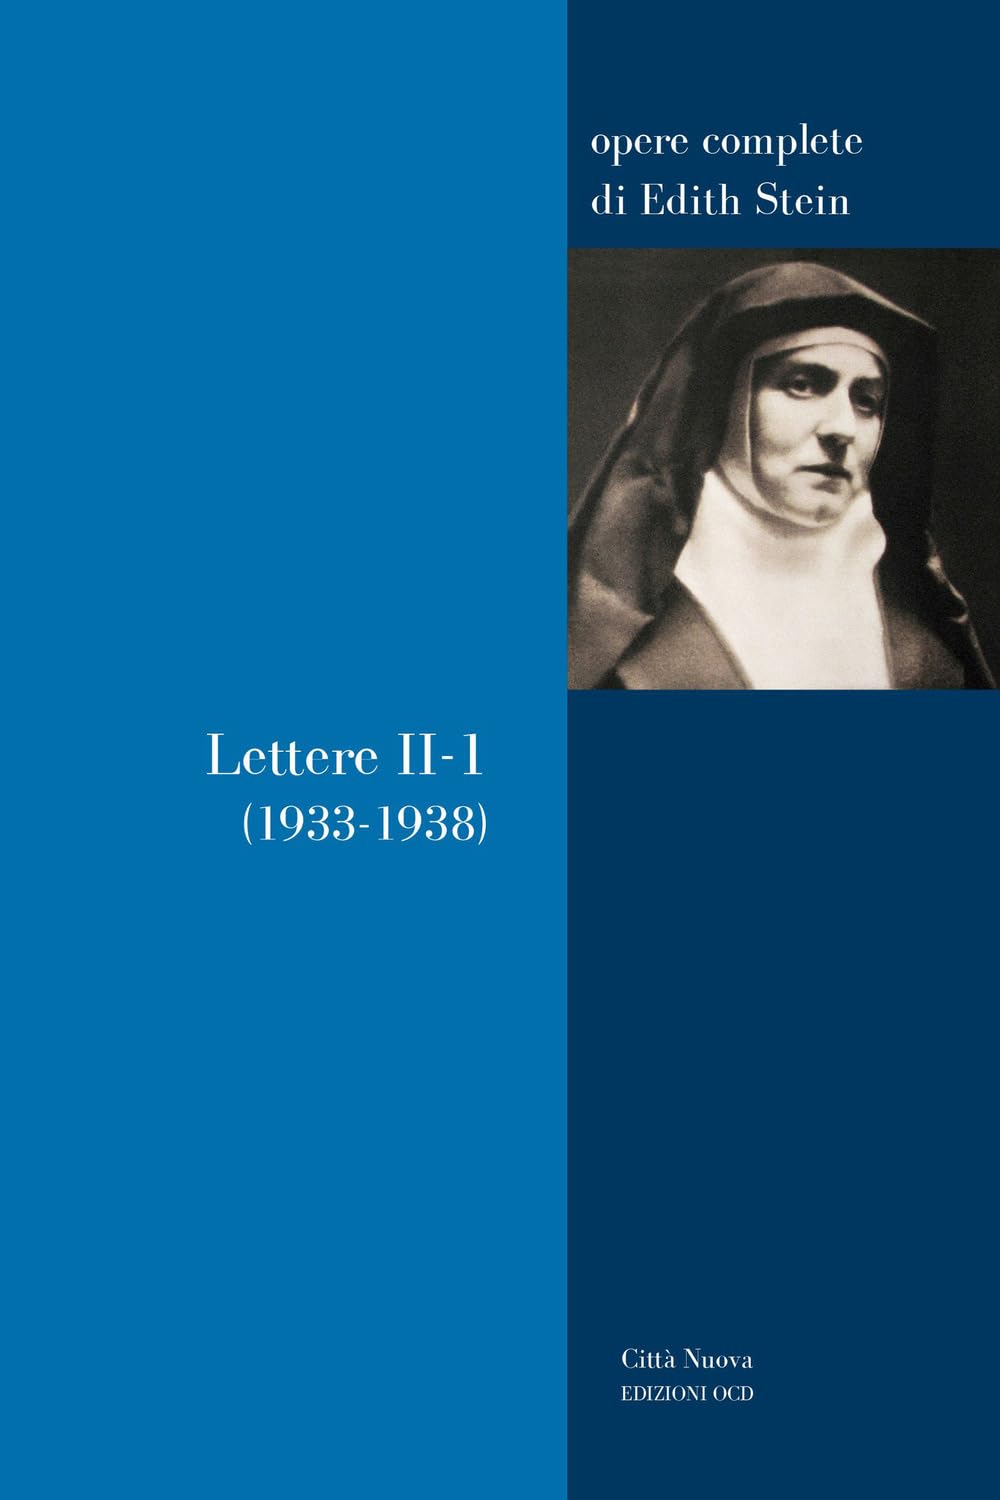 Novità editoriali – Lettere. 1933-1938 (Vol. 2/1) – Edith Stein